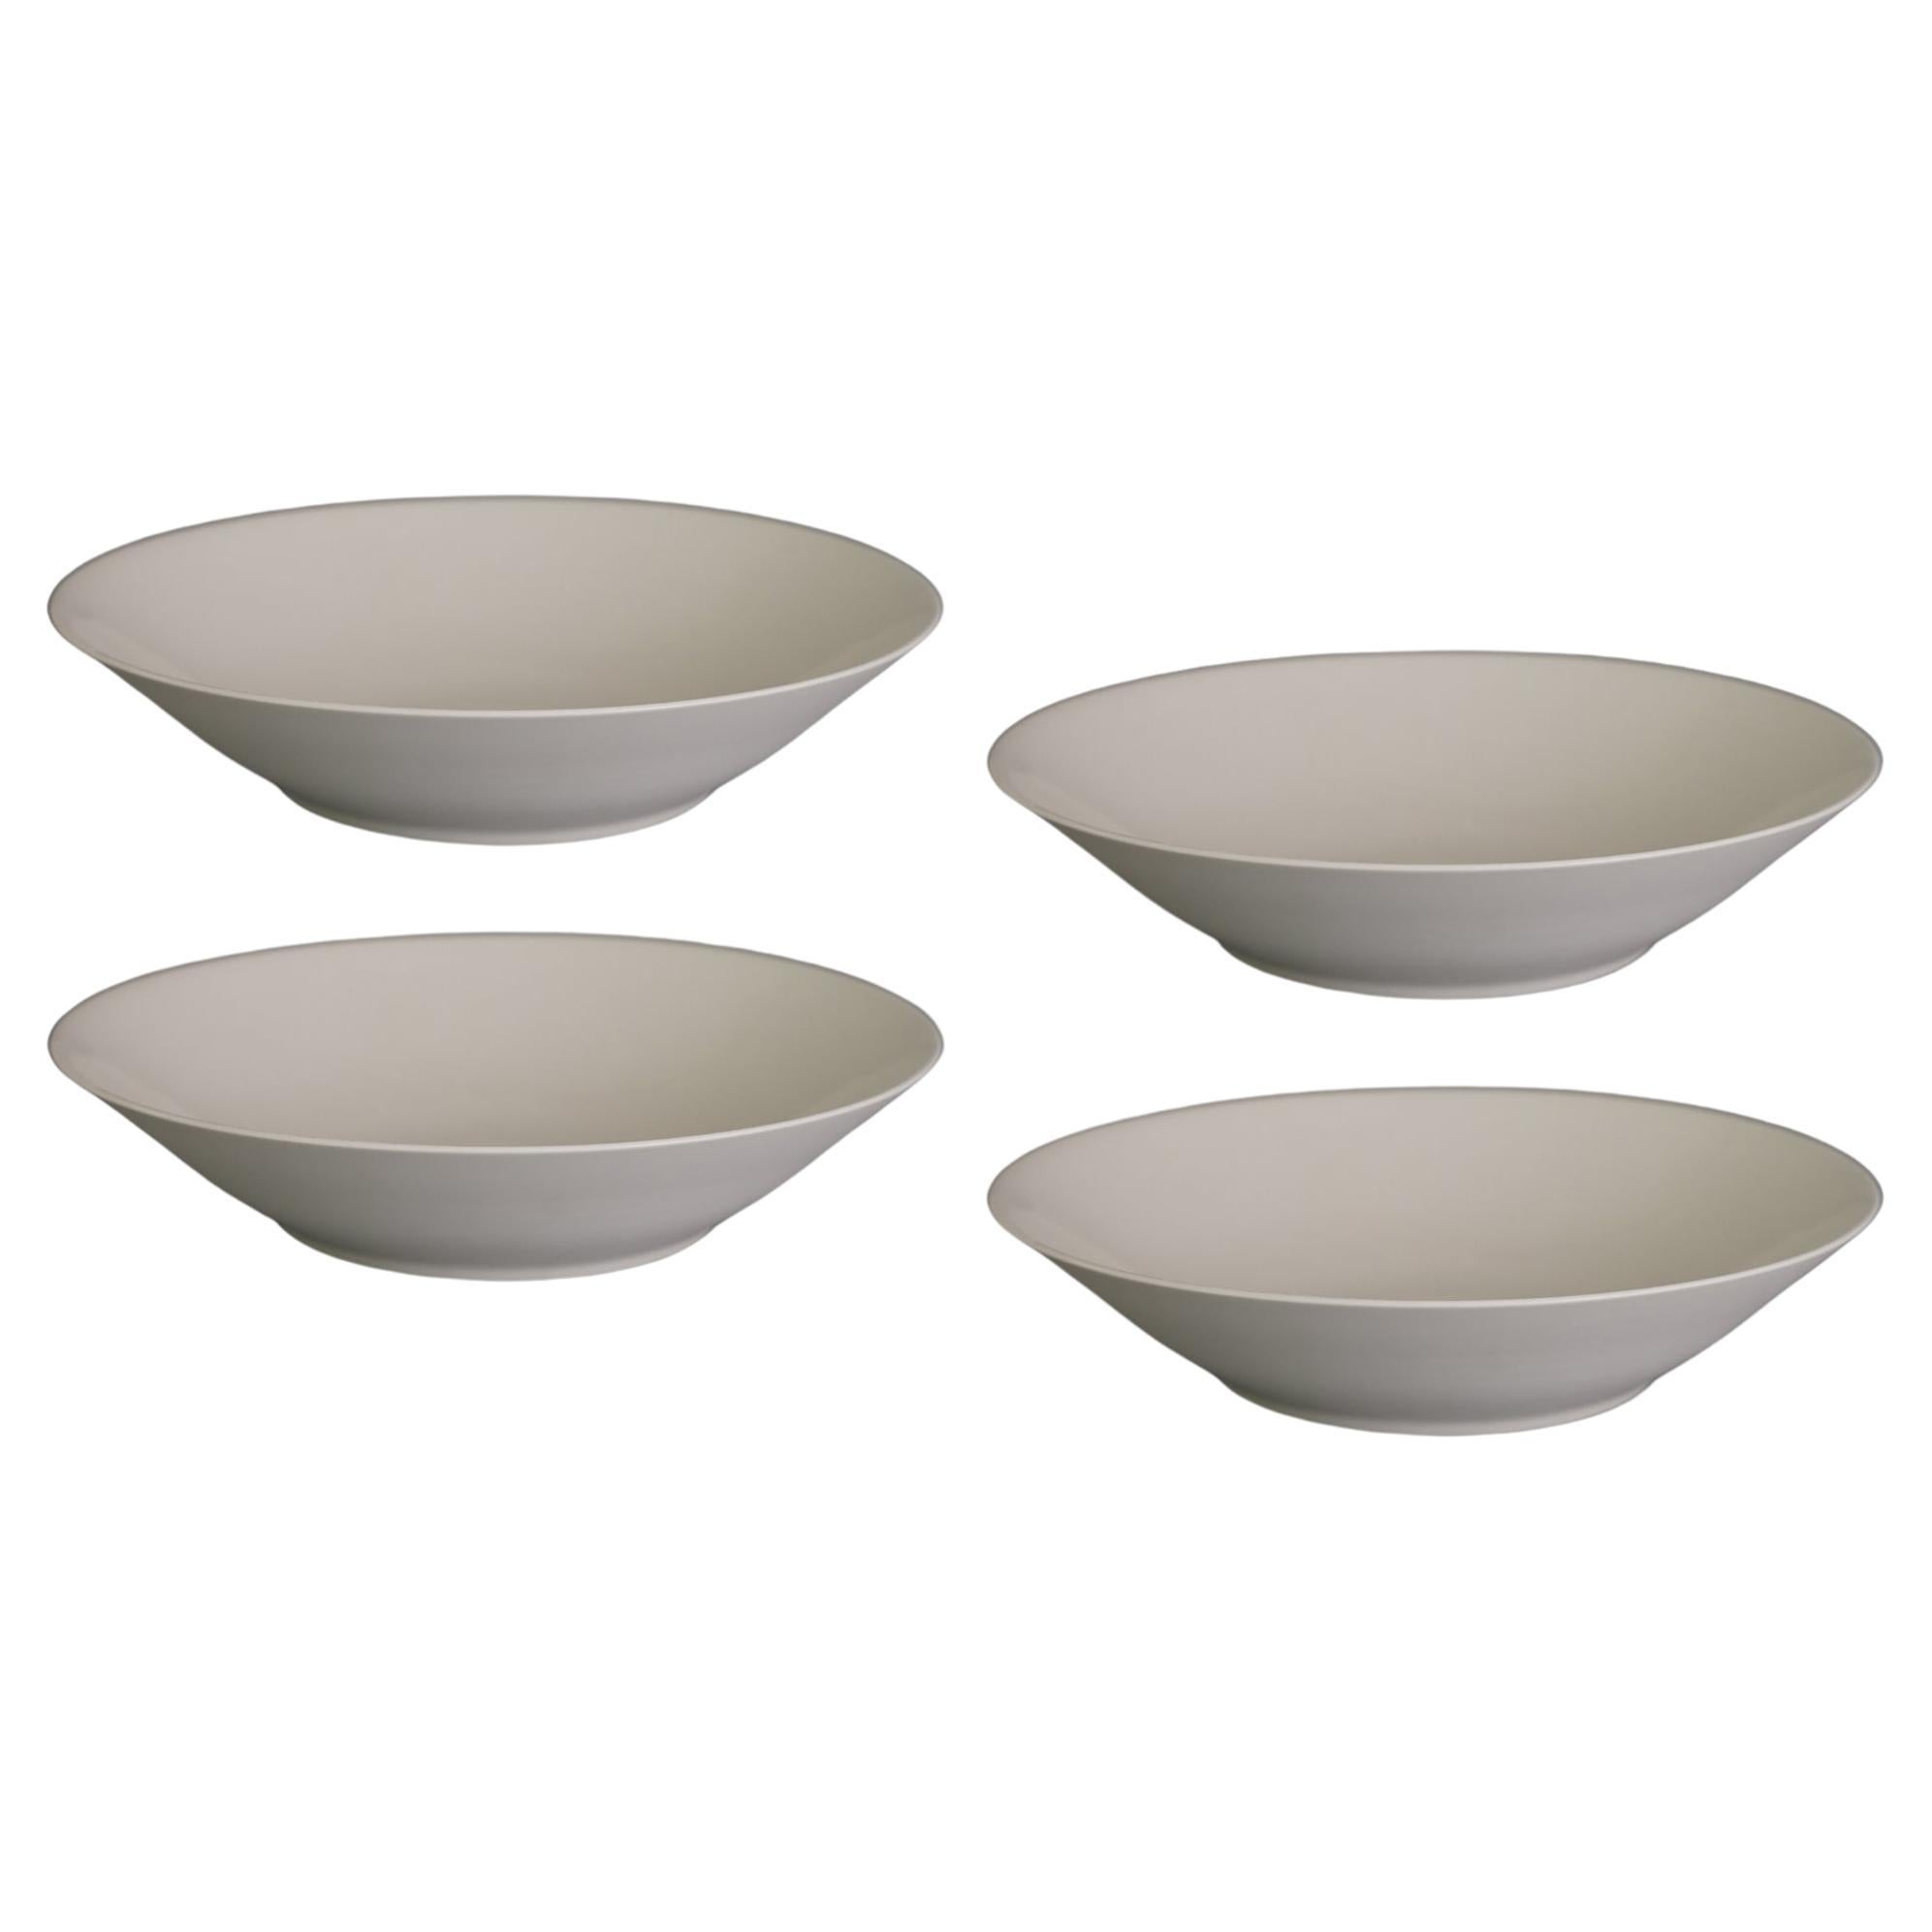  Set of 4 Plain Fruit Bowls by Studio Cúze For Sale